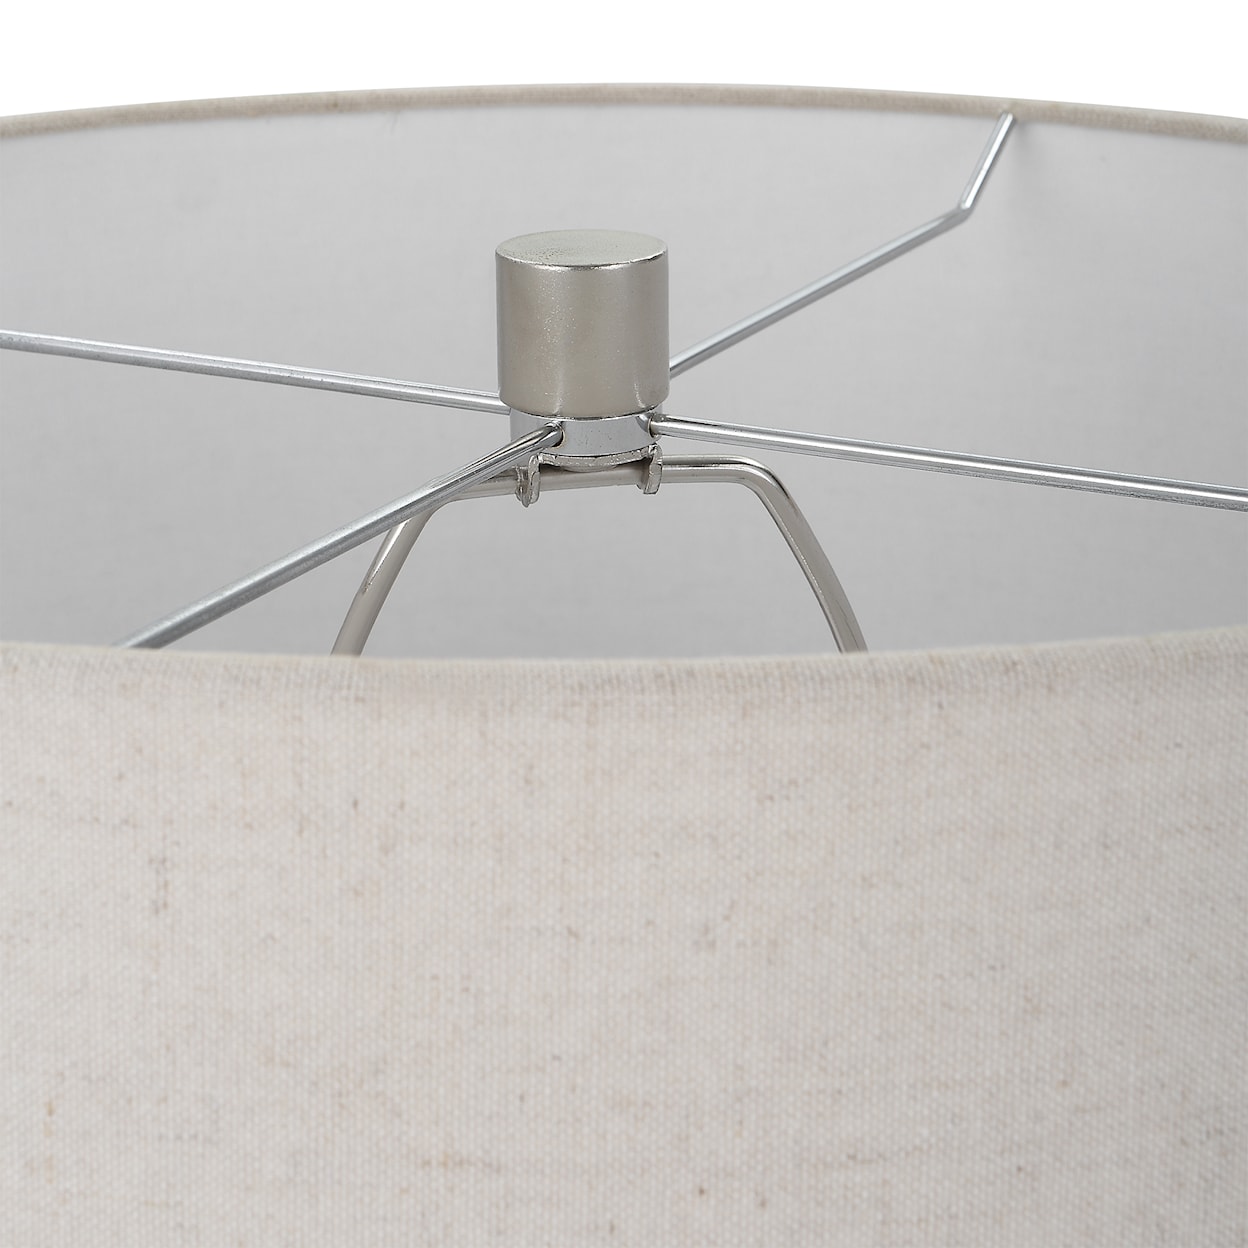 Uttermost Contour Contour Metallic Glass Table Lamp